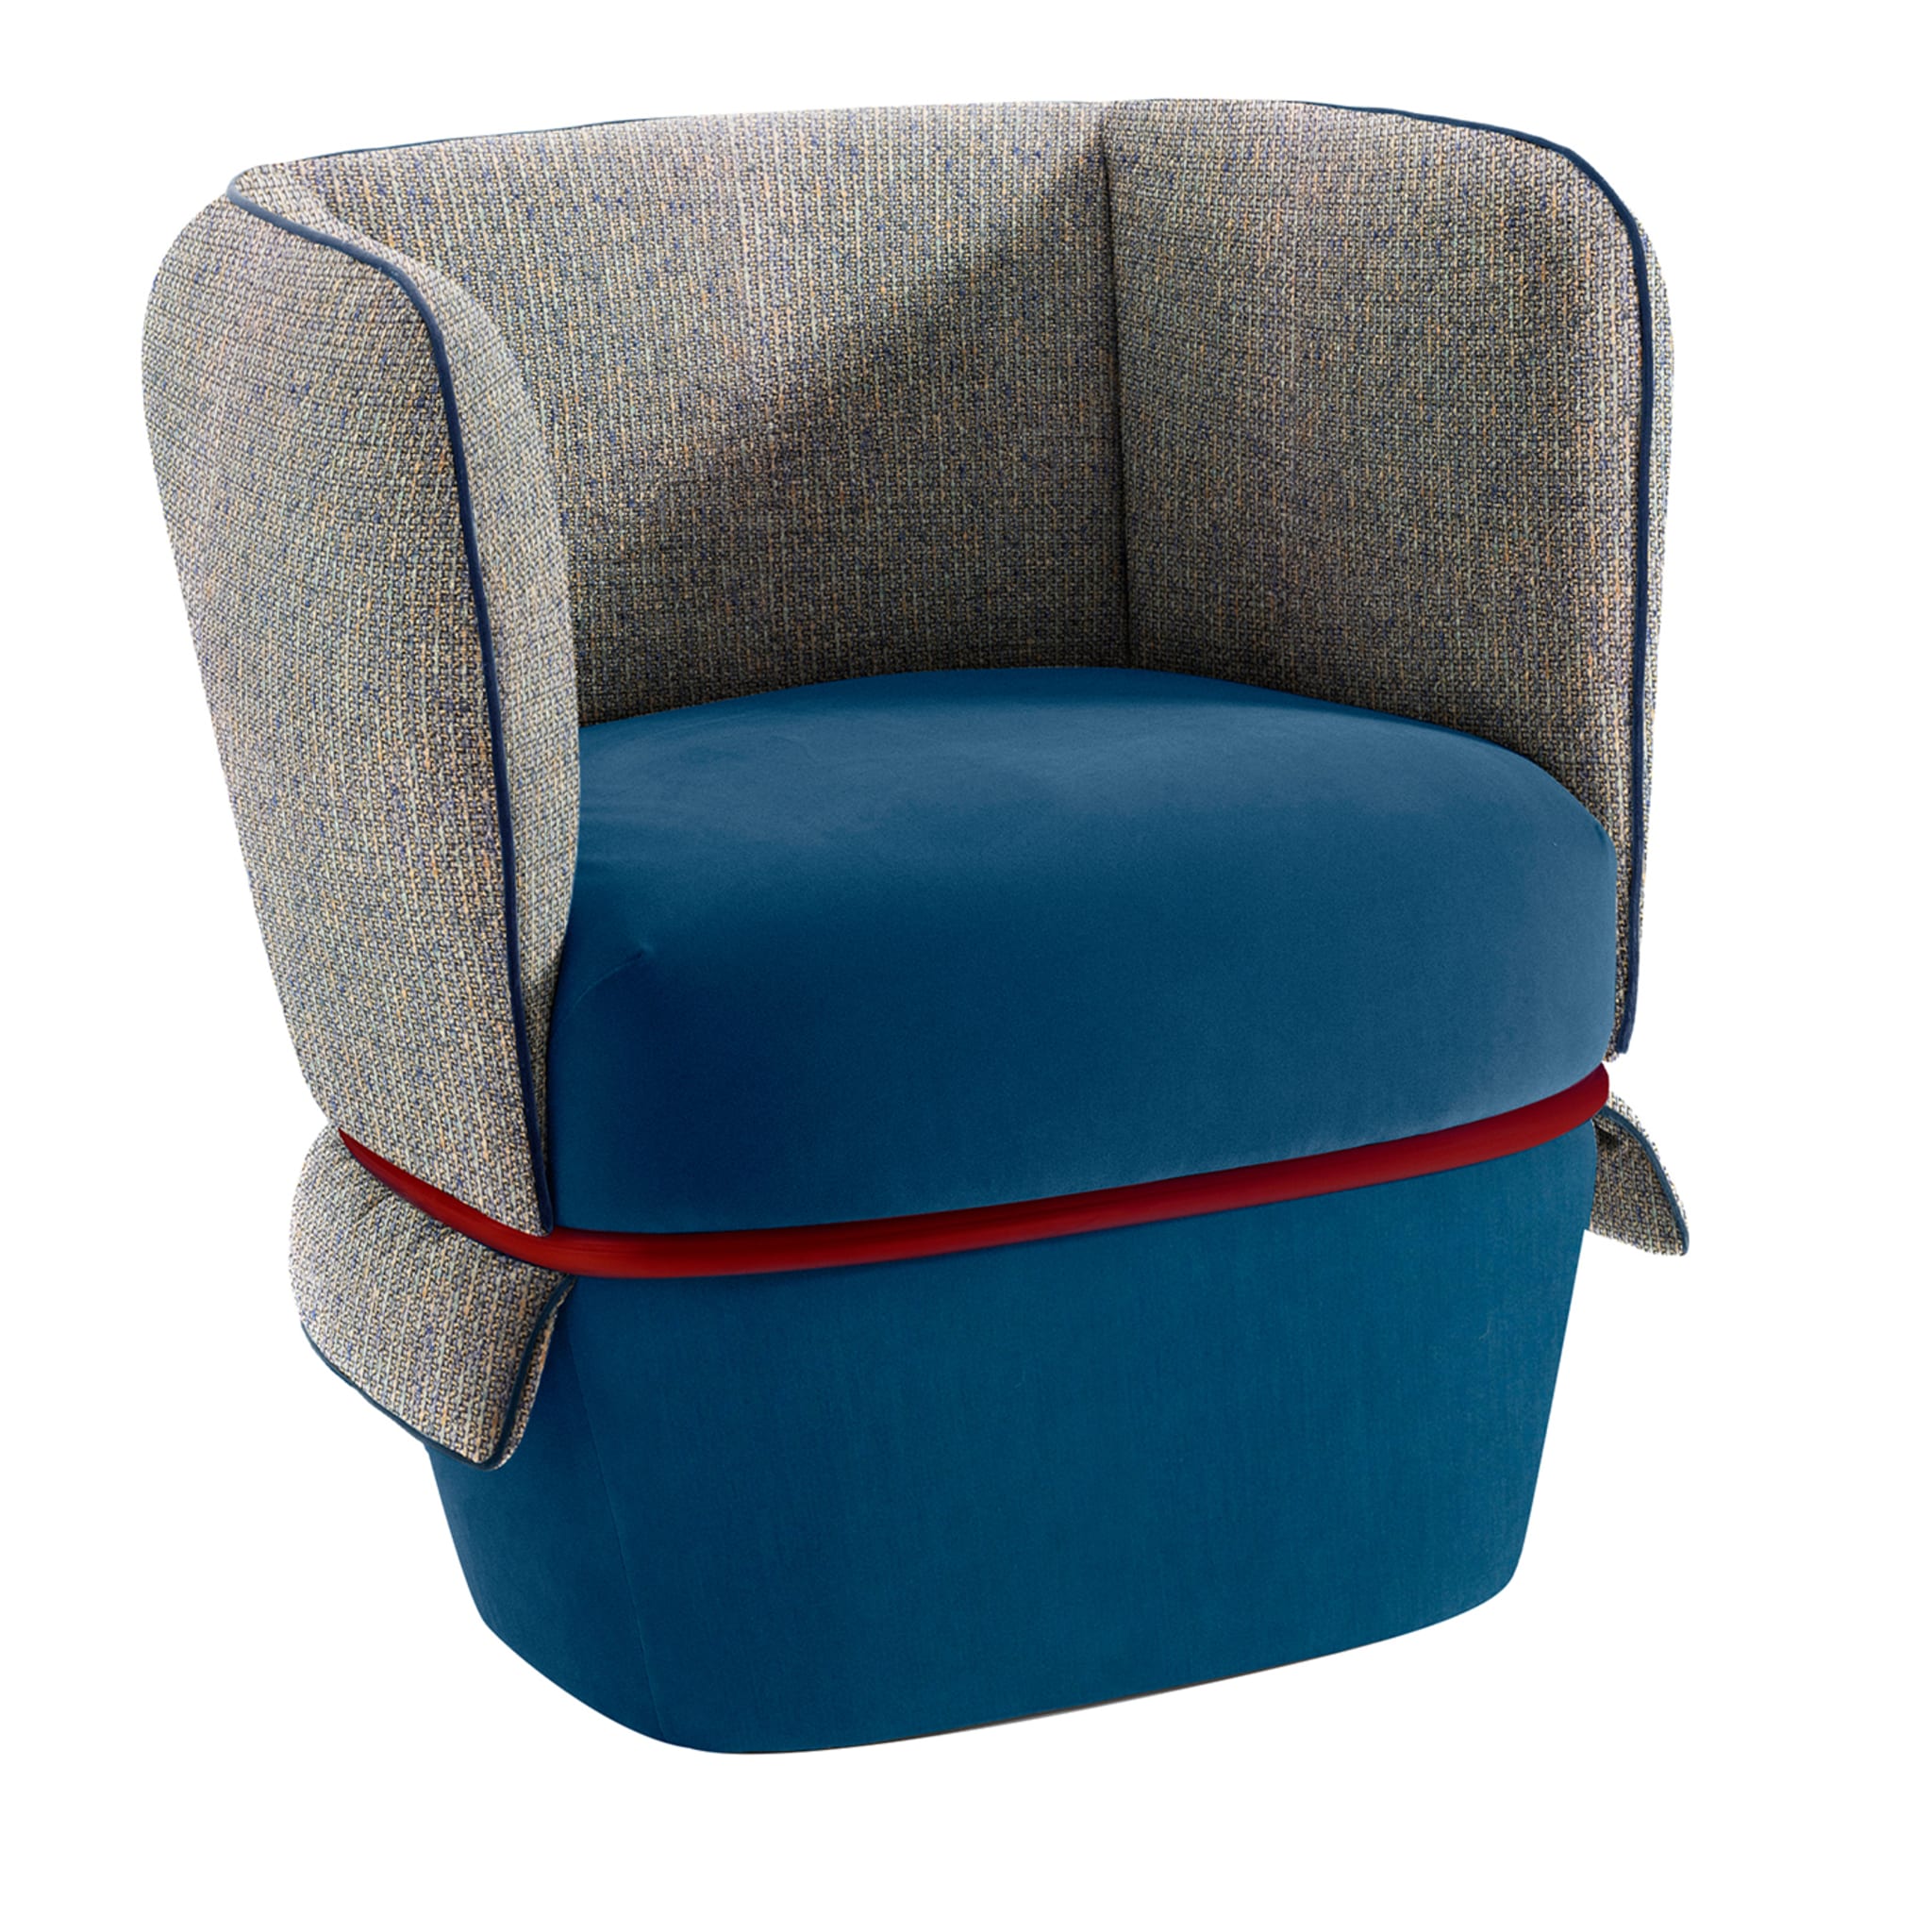 Blauer und grauer Chemise-Sessel von Studio LI_DO - Hauptansicht